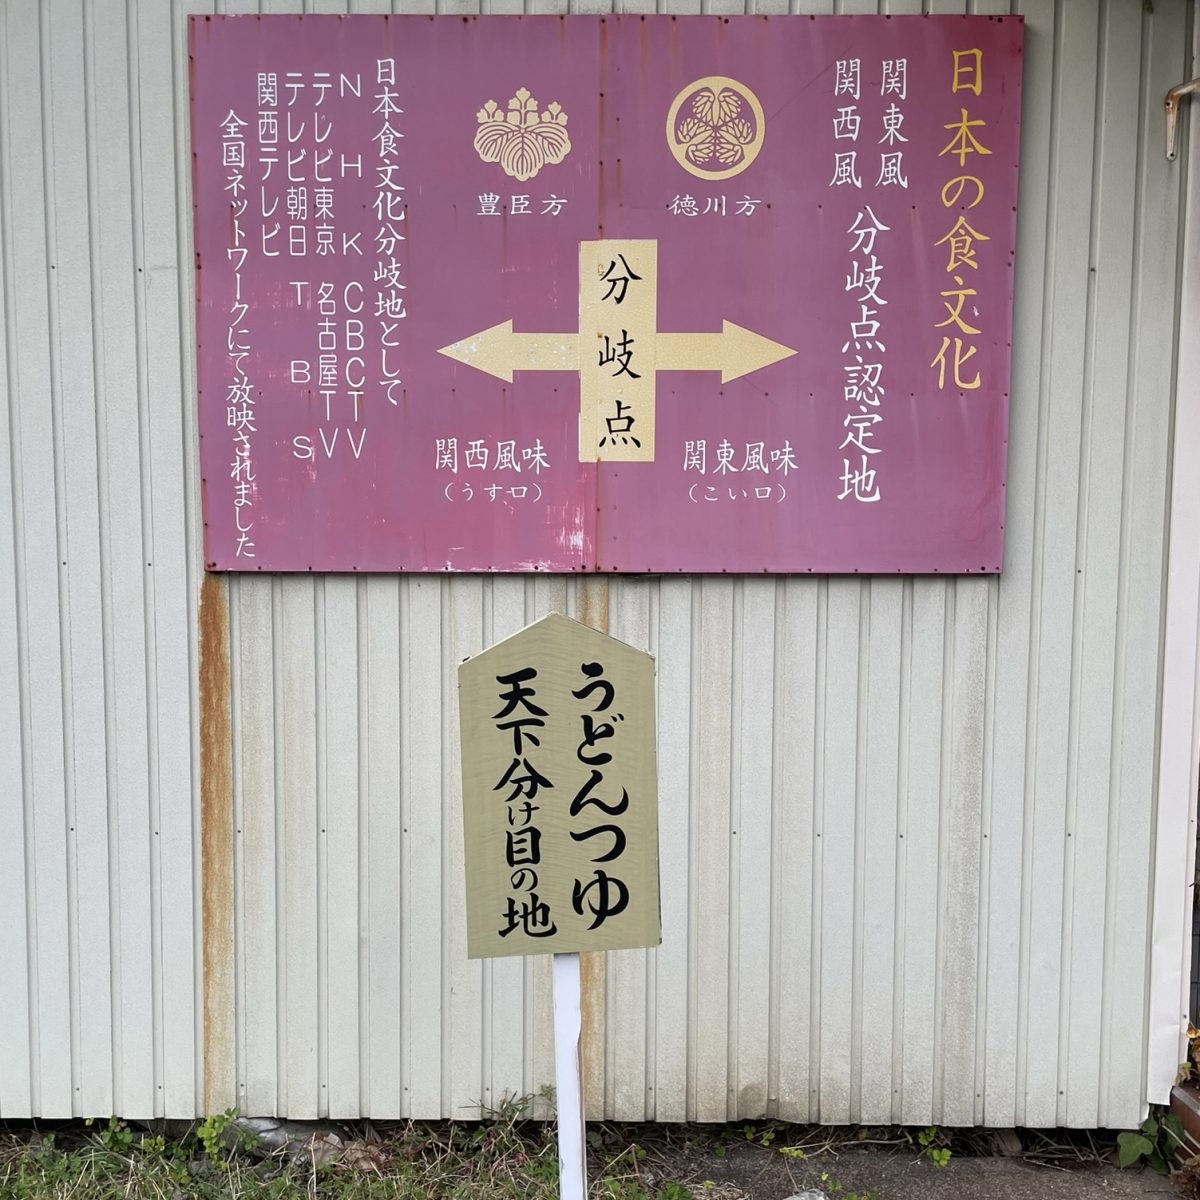 岐阜県関ヶ原にある「関東風関西風分岐点認定地」の看板